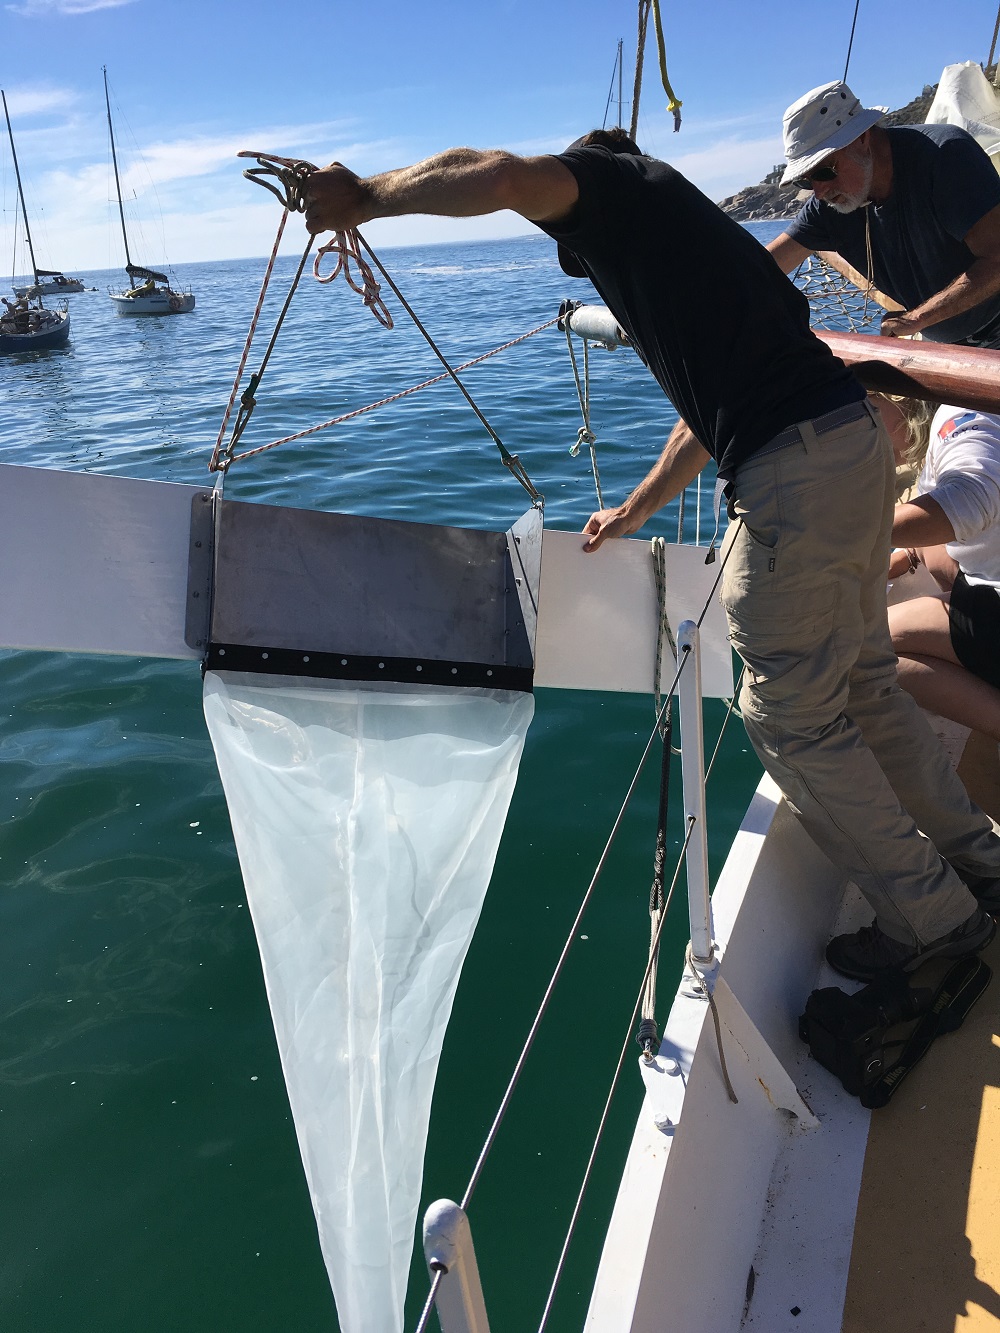 Manta Trawl being lowered into the ocean_Yatch Boaz_web